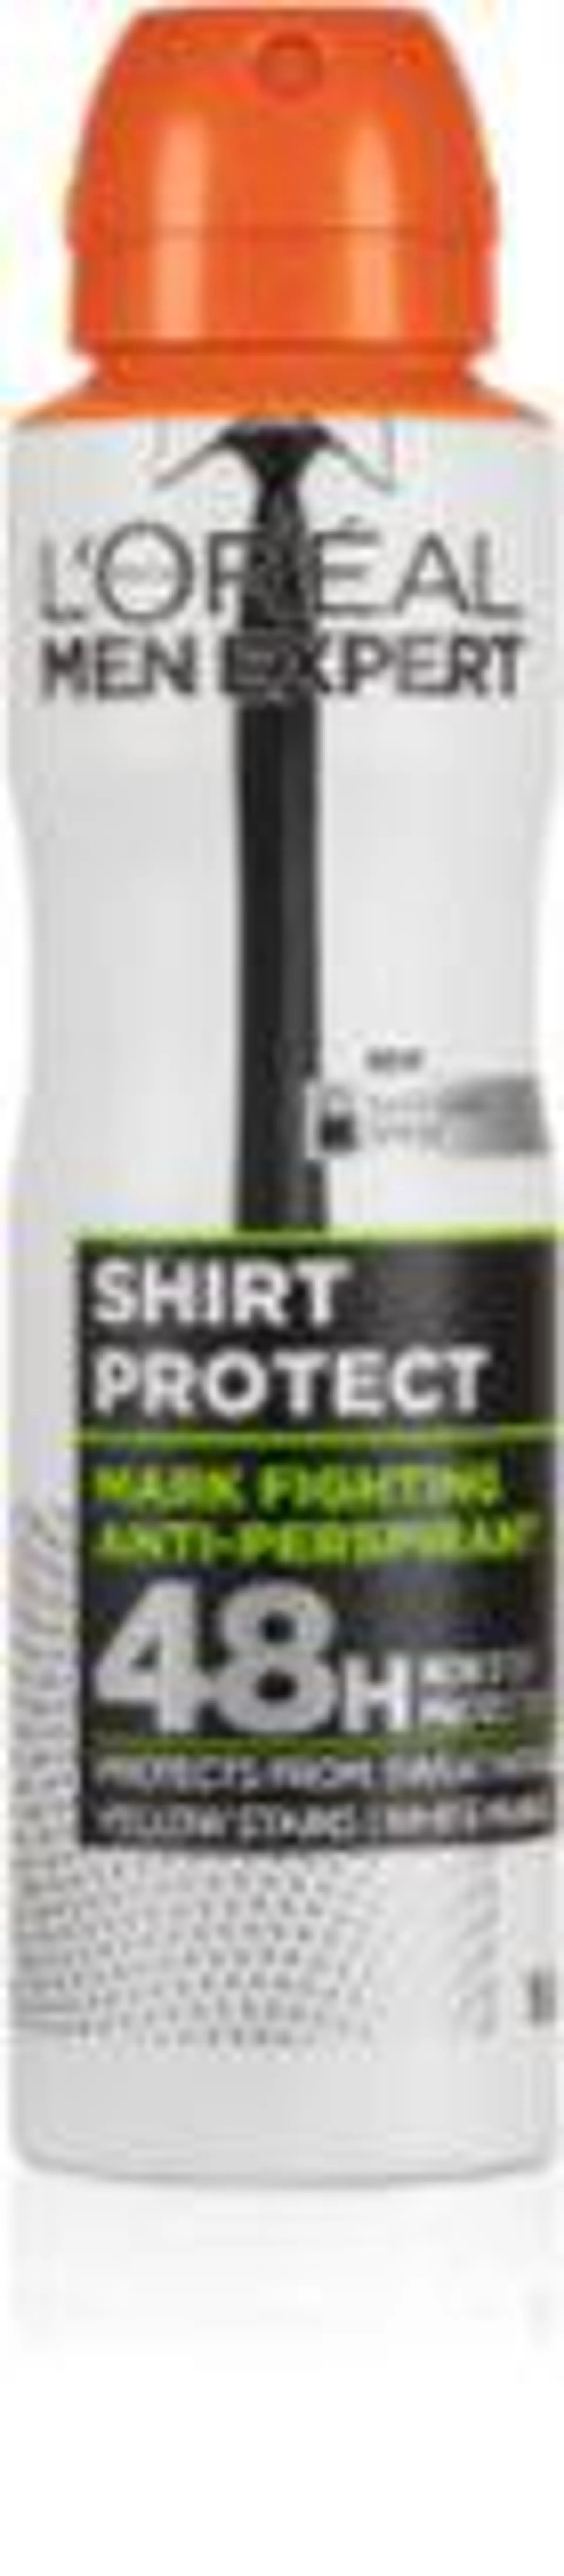 Men Expert Shirt Protect